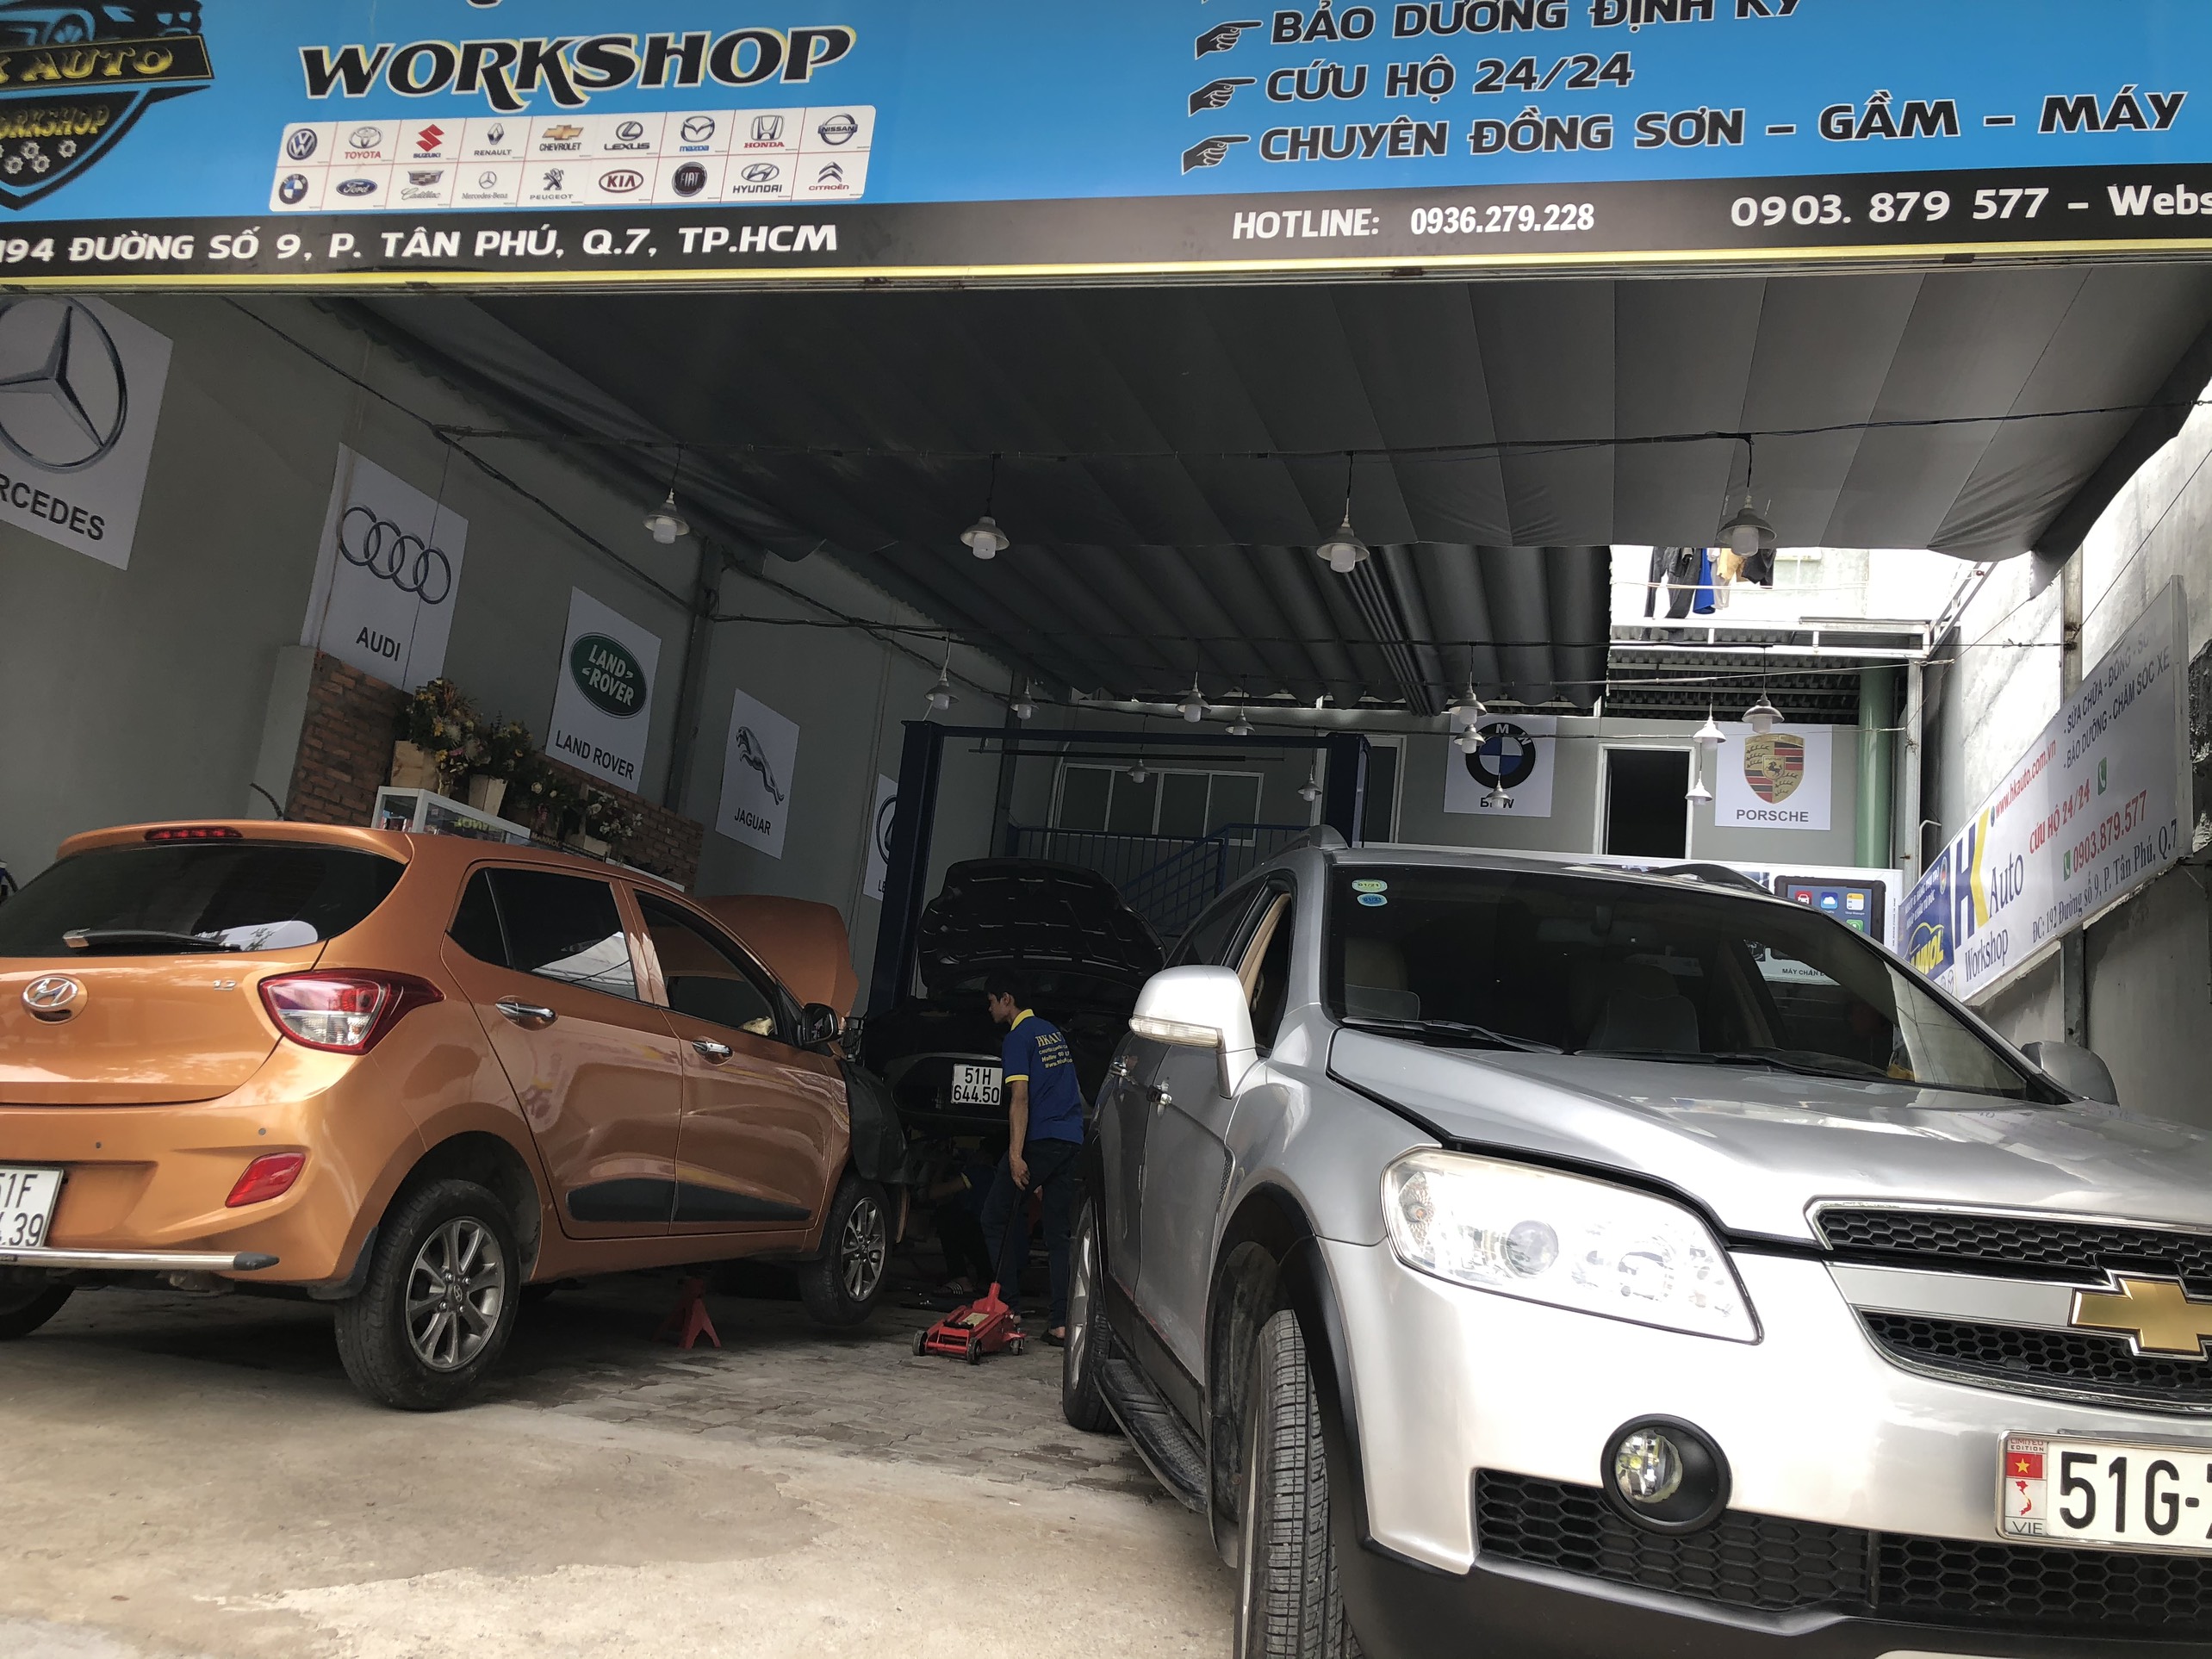 HK Auto - Địa chỉ sửa chữa bảo dưỡng ô tô uy tín tại quận 7